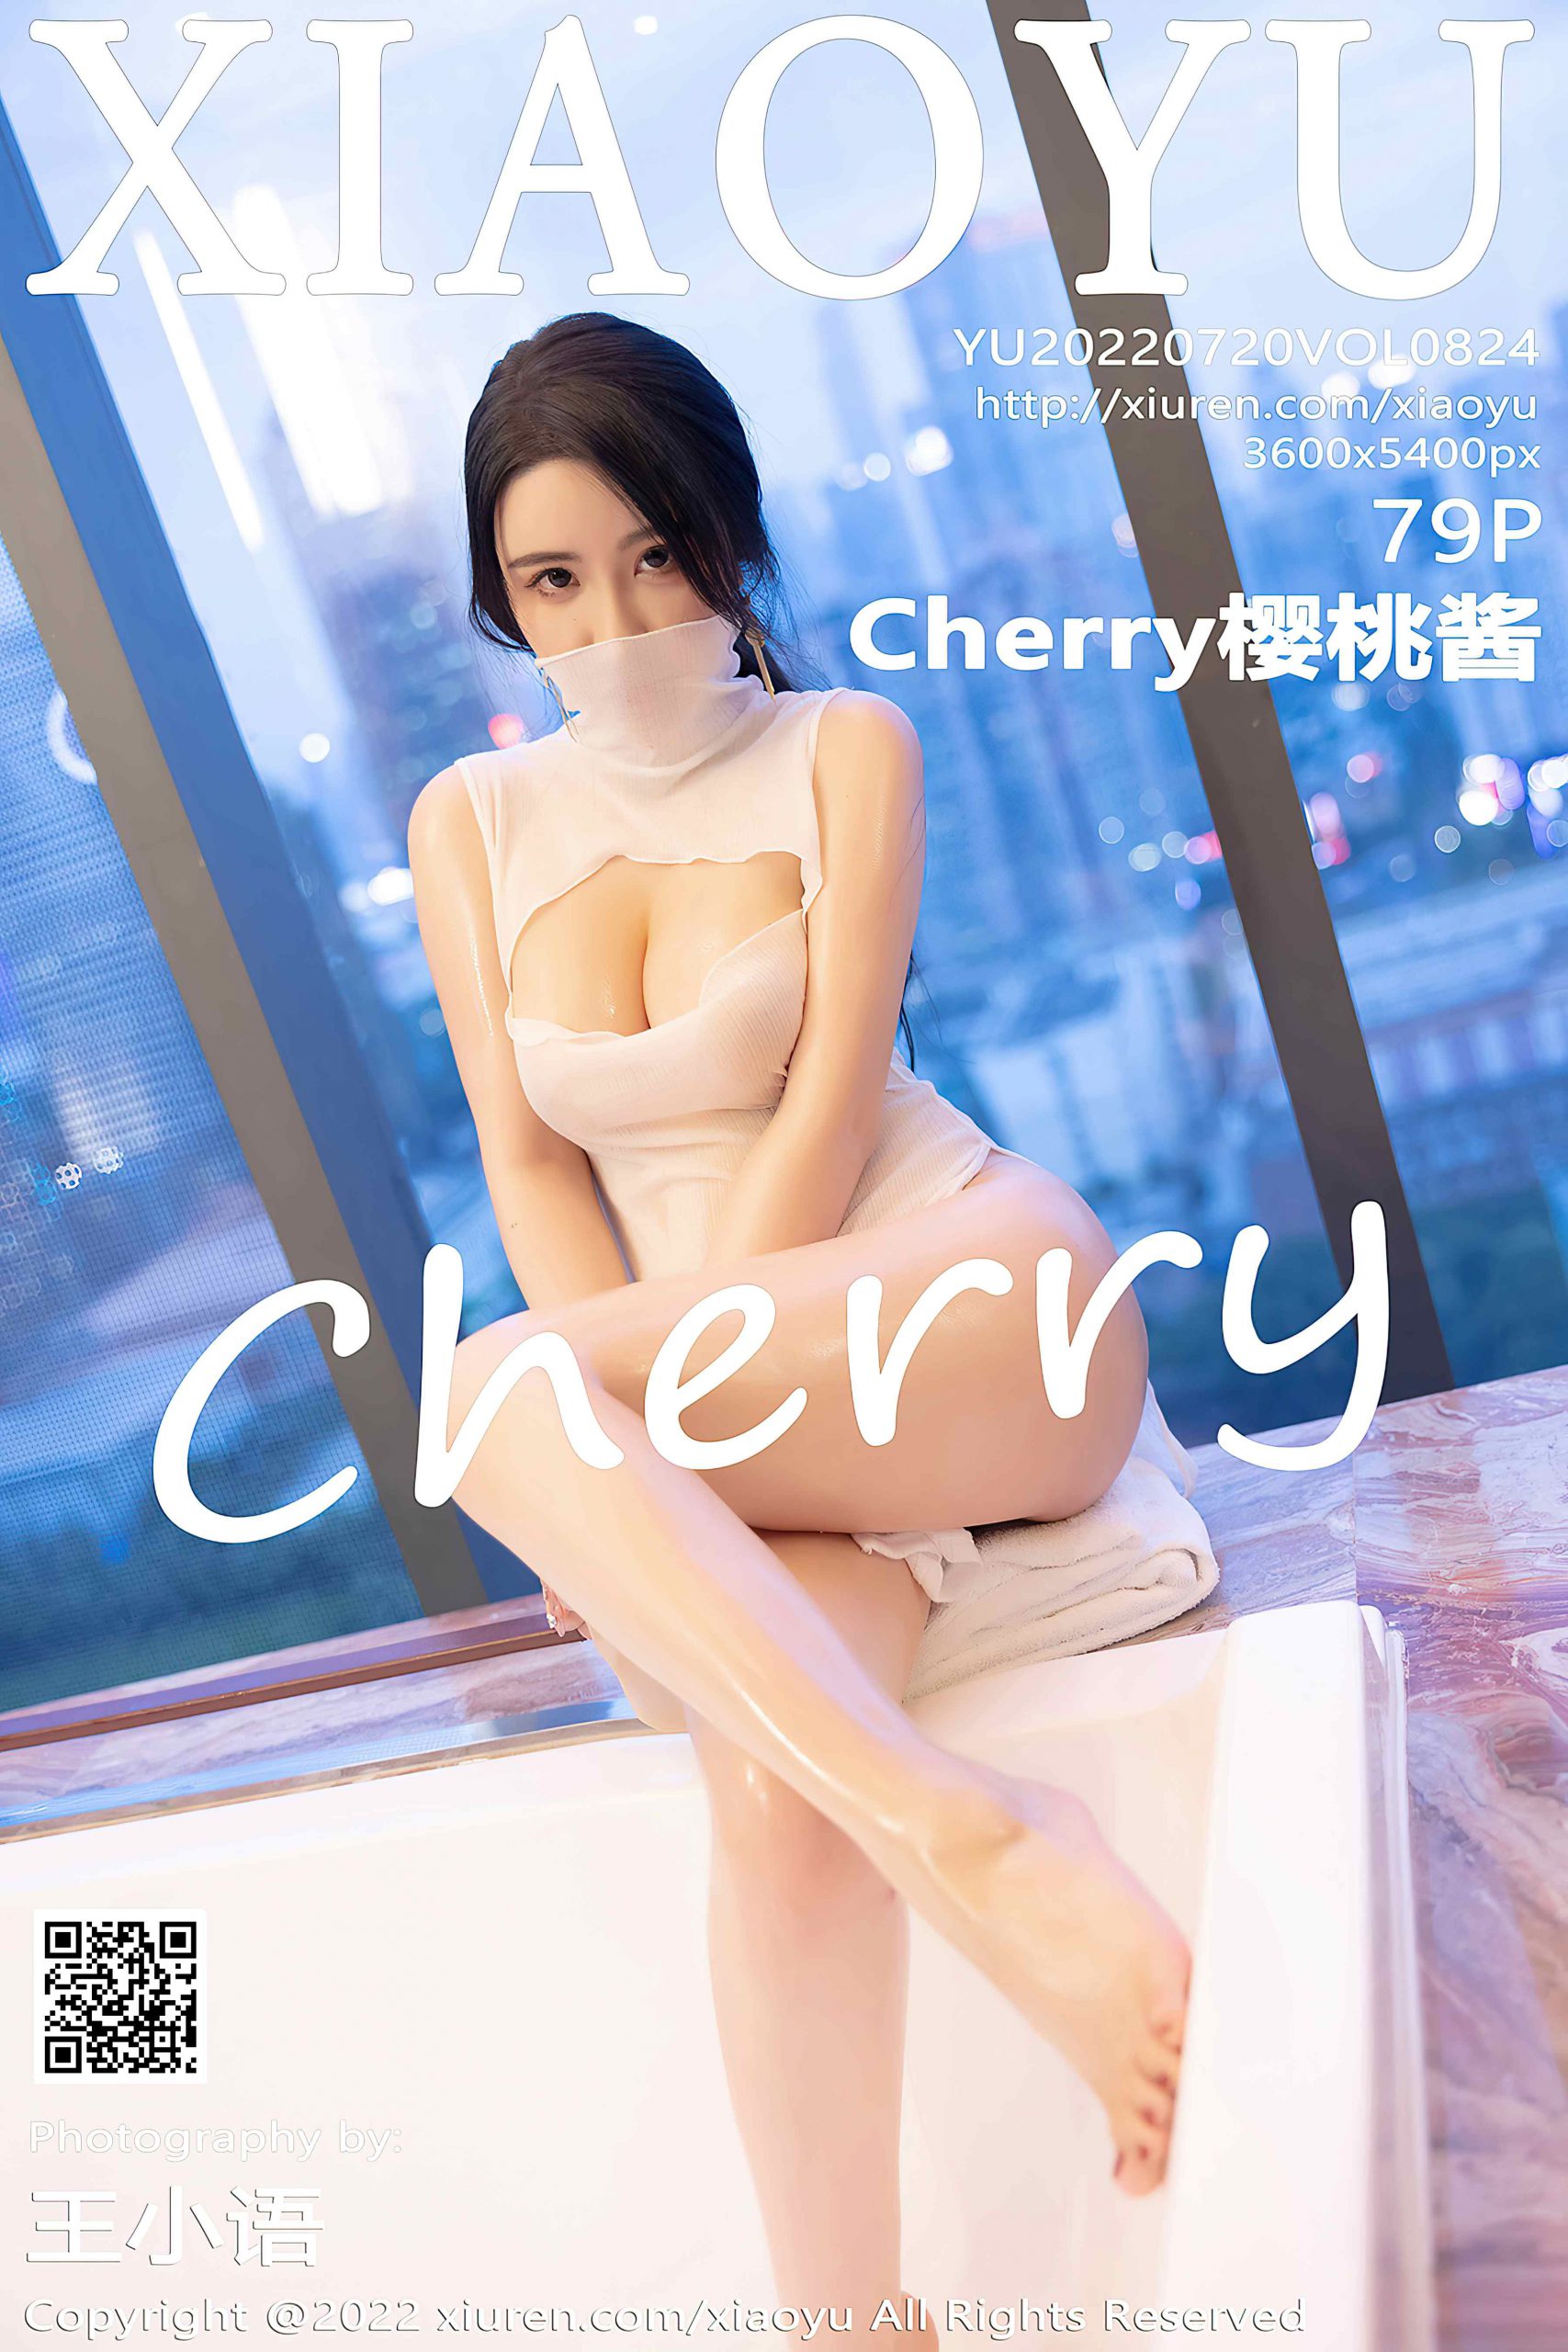 [XIAOYU语画界] 2022.07.20 VOL.824 Cherry樱桃酱 丝袜美腿[79P/638M]